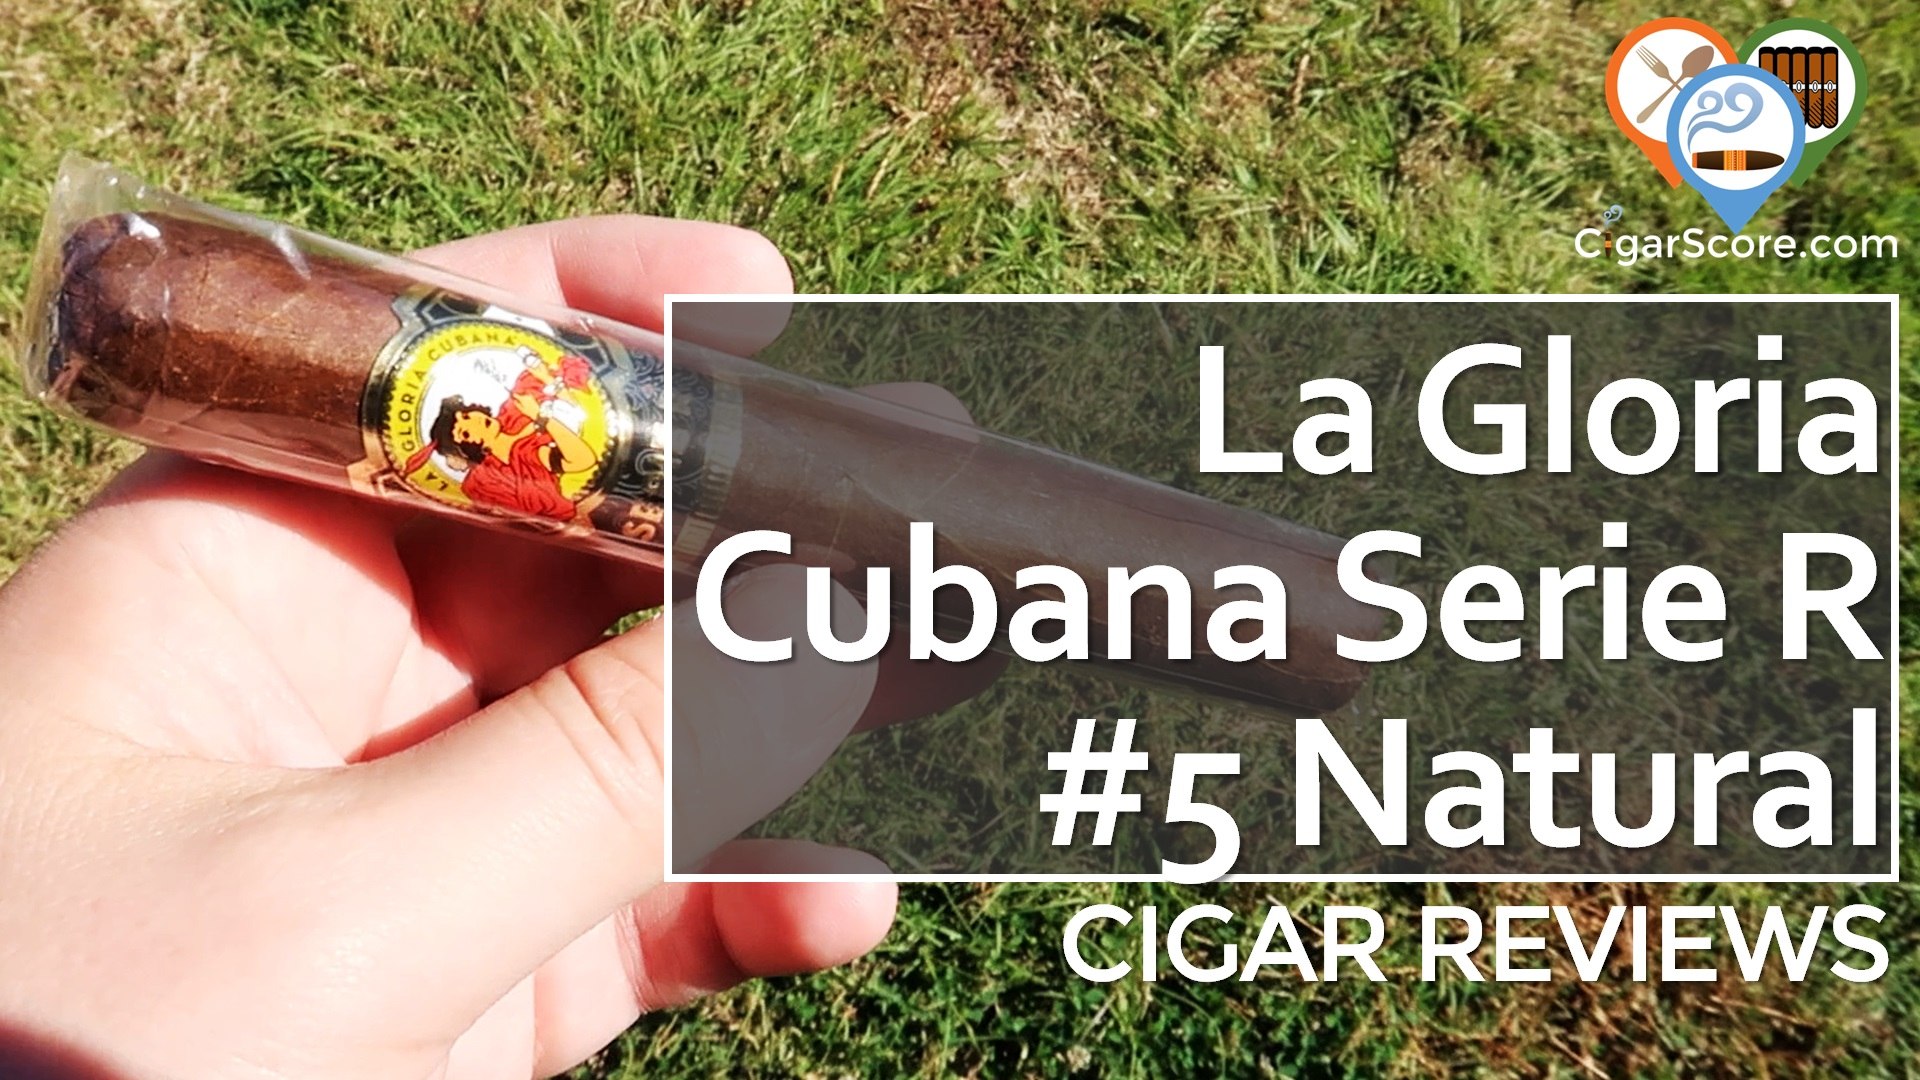 Cigar Review: La Gloria Cubana Serie R No. 5 Natural